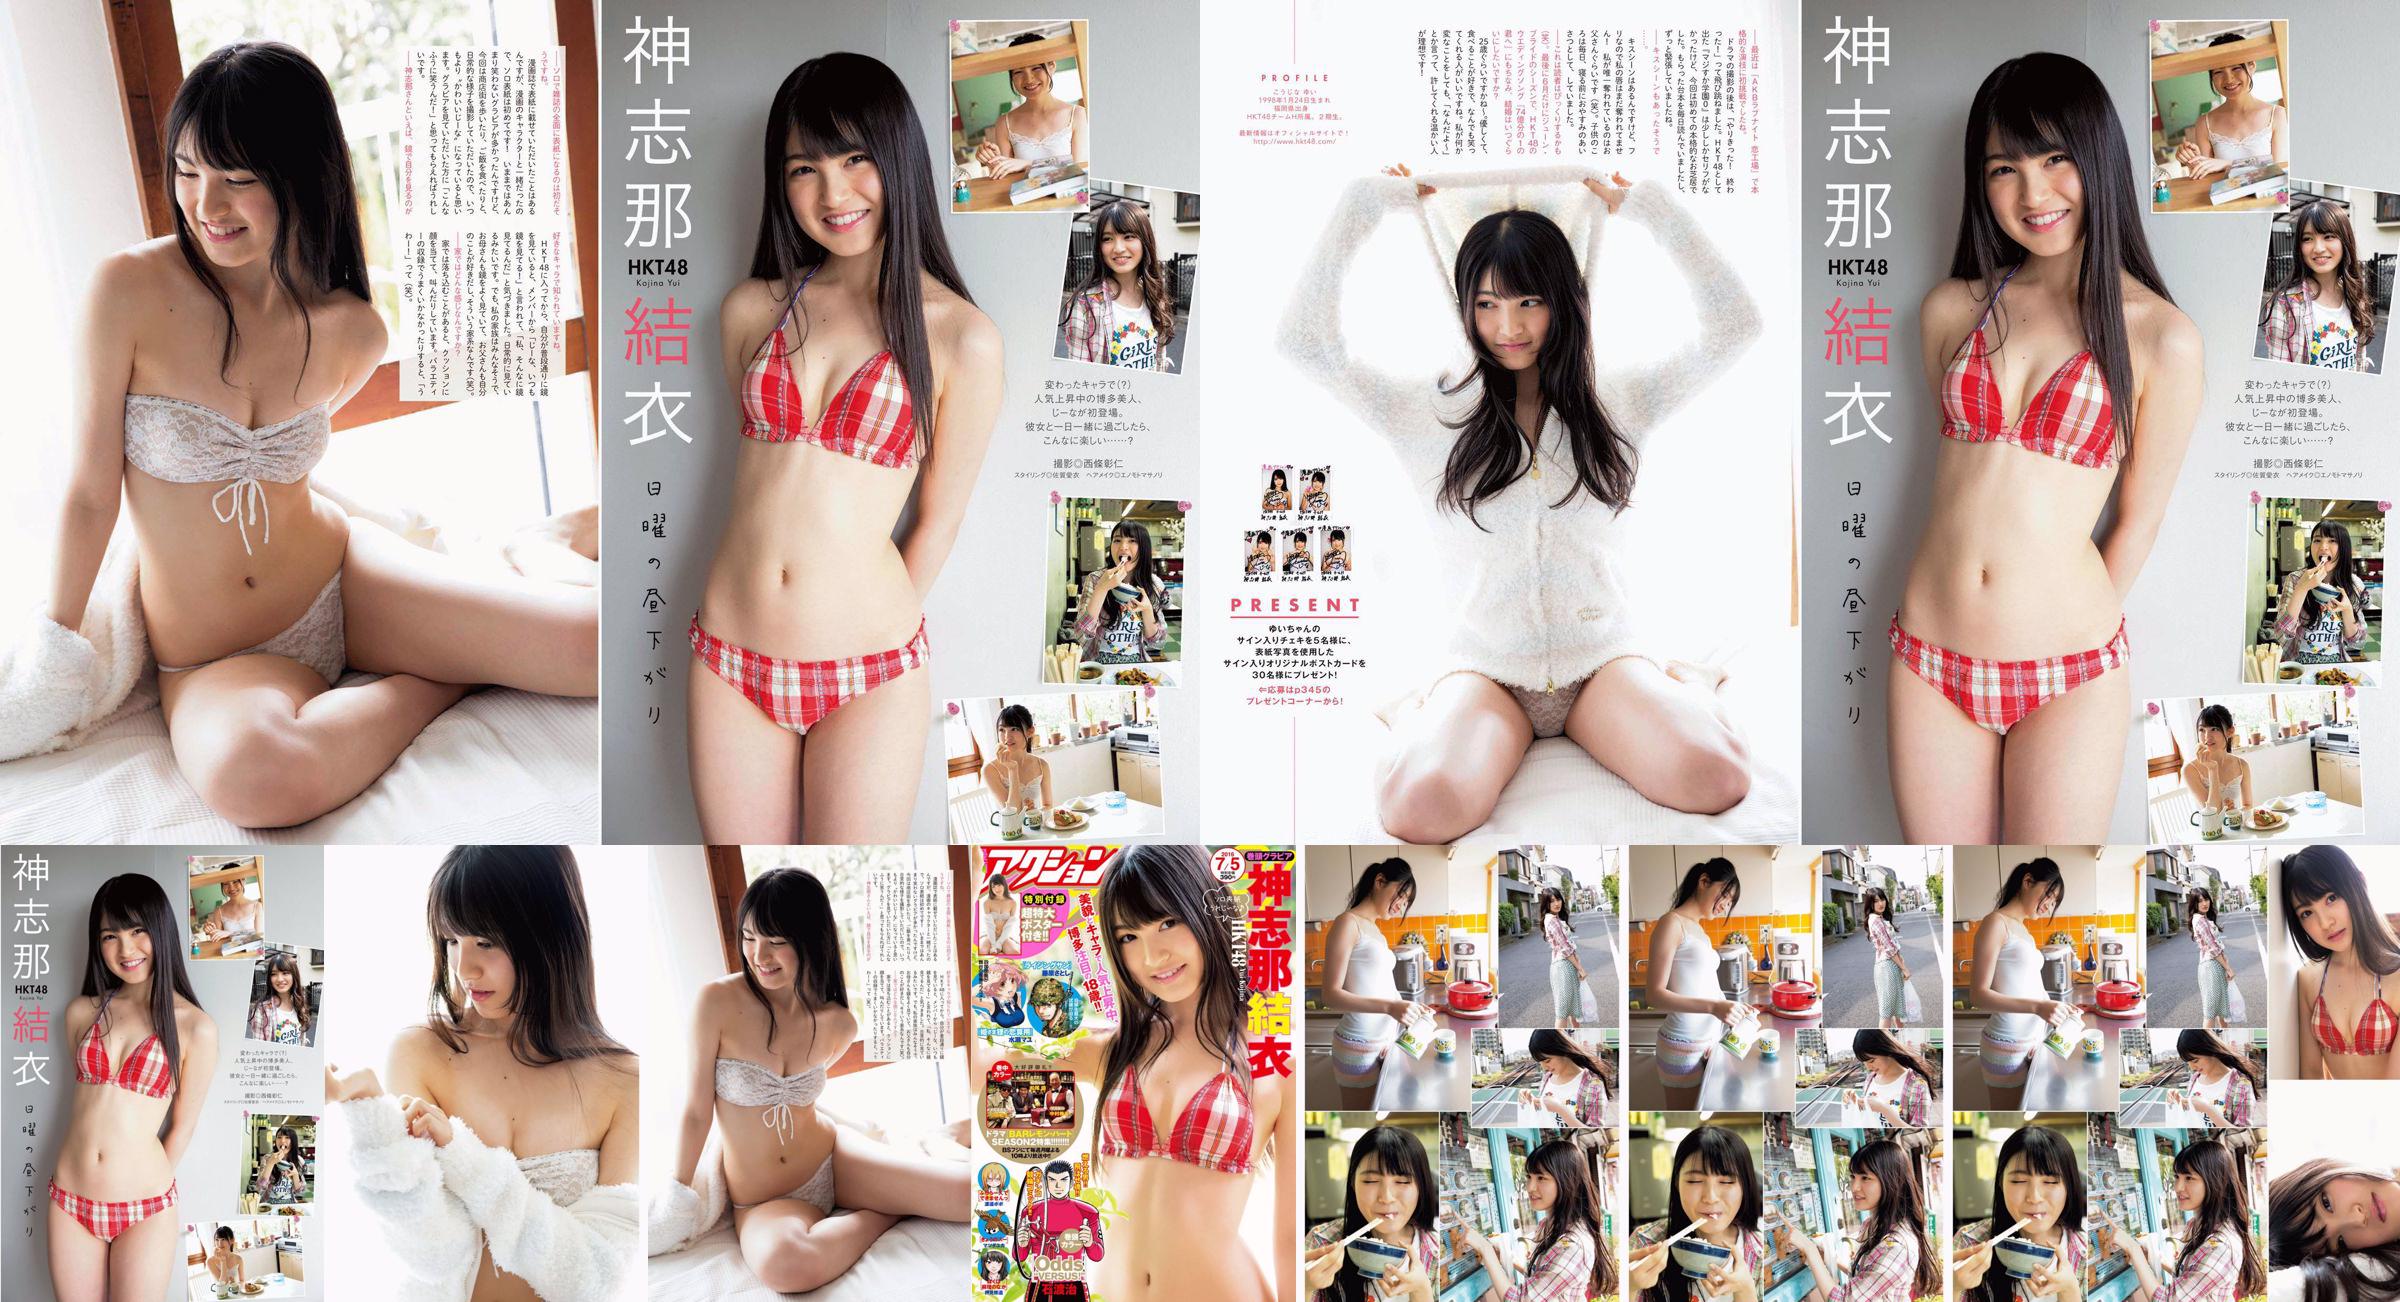 [Acción Manga] Shinshina Yui 2016 No.13 Photo Magazine No.39e5fa Página 1